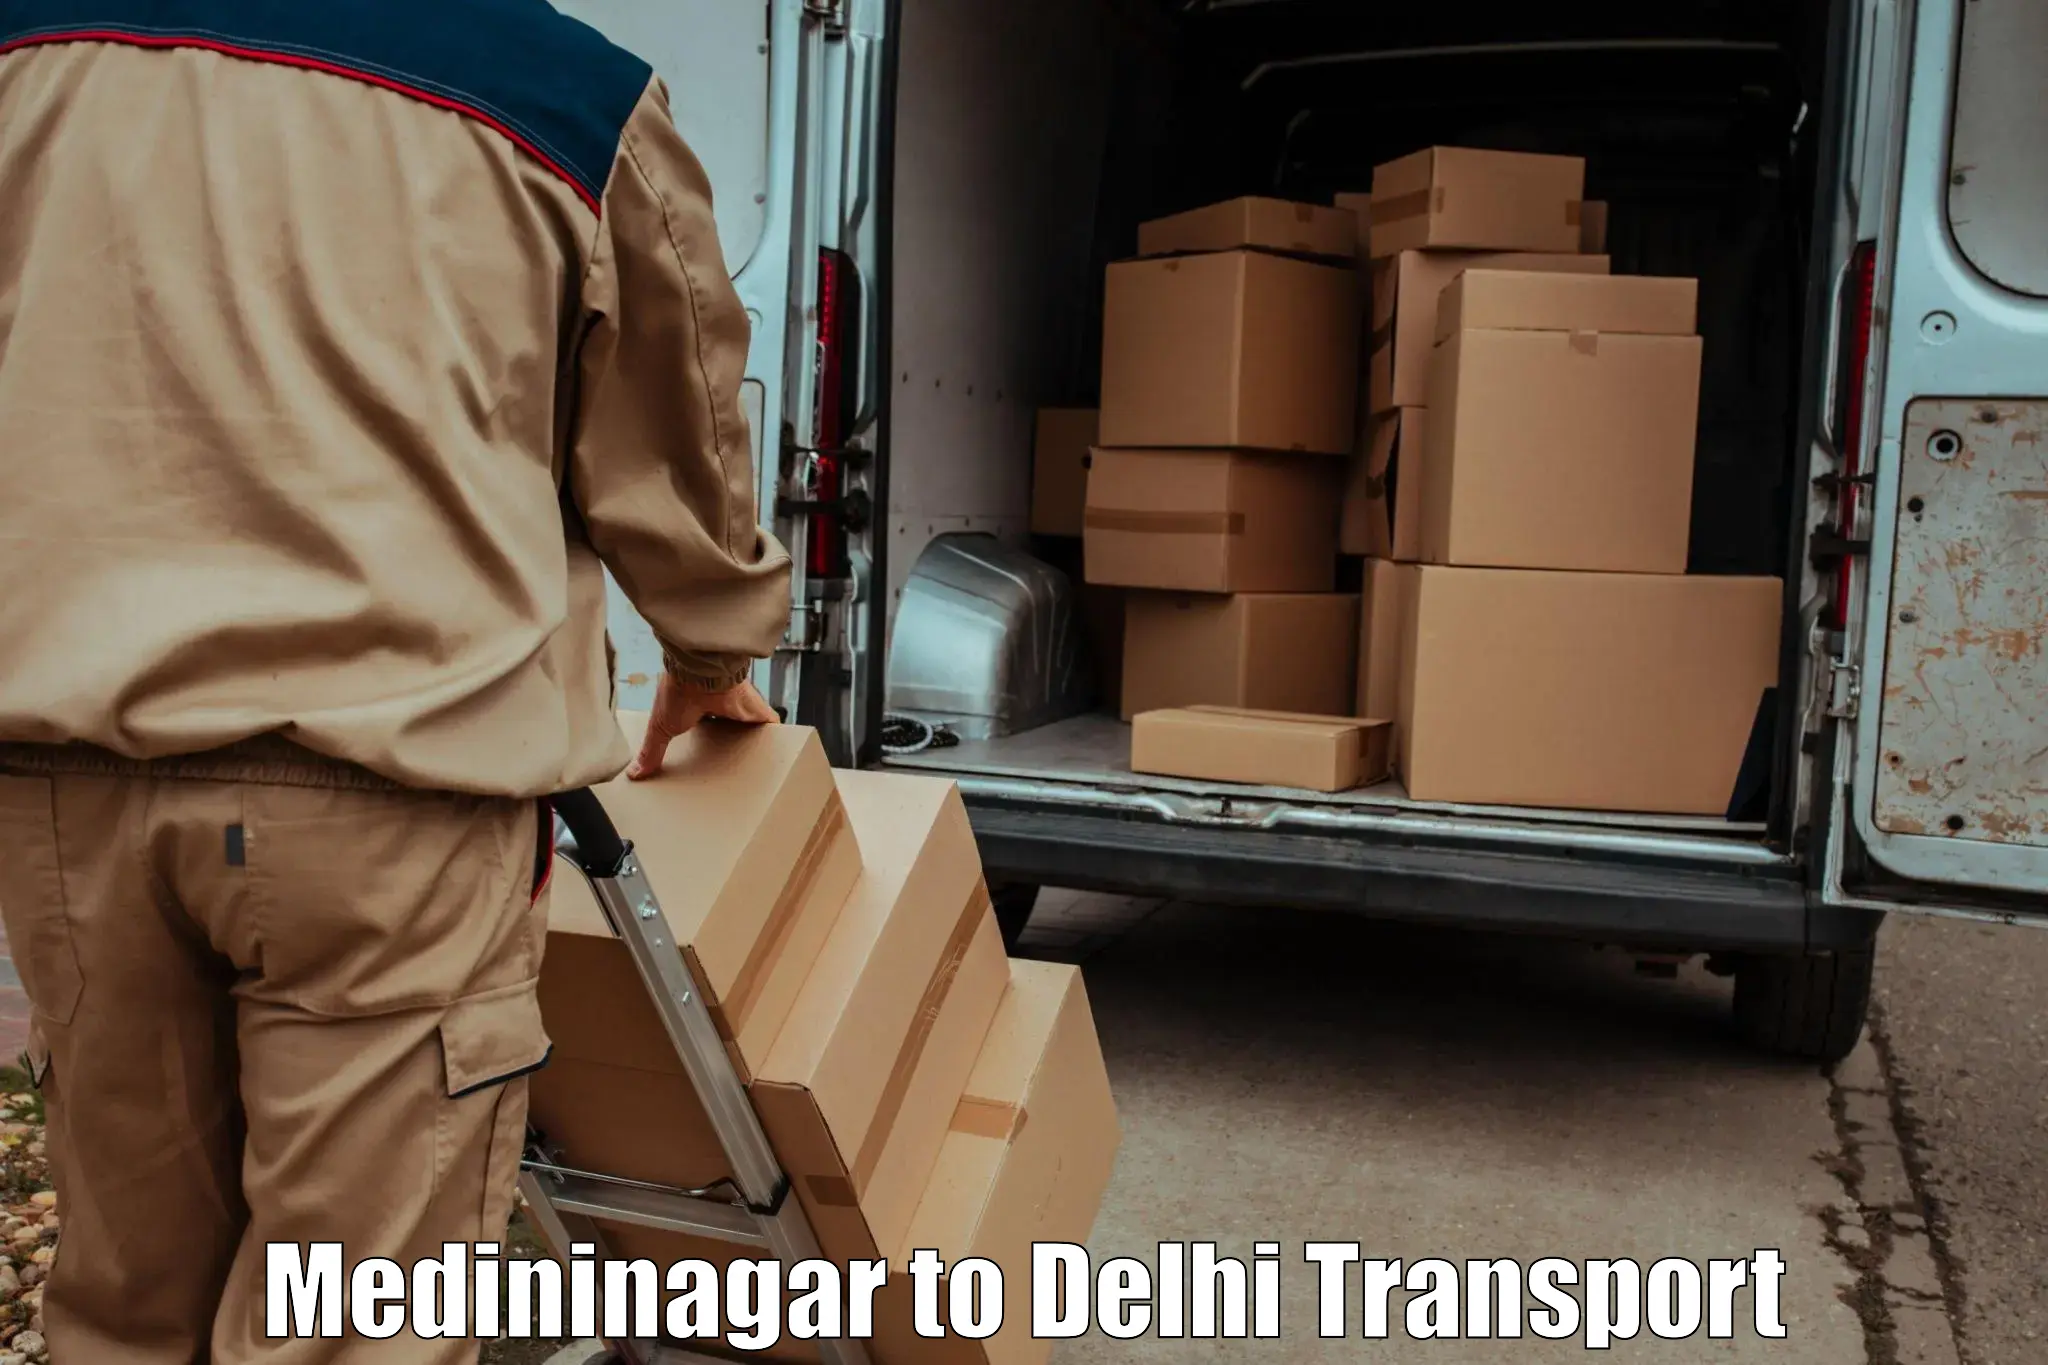 Land transport services in Medininagar to East Delhi